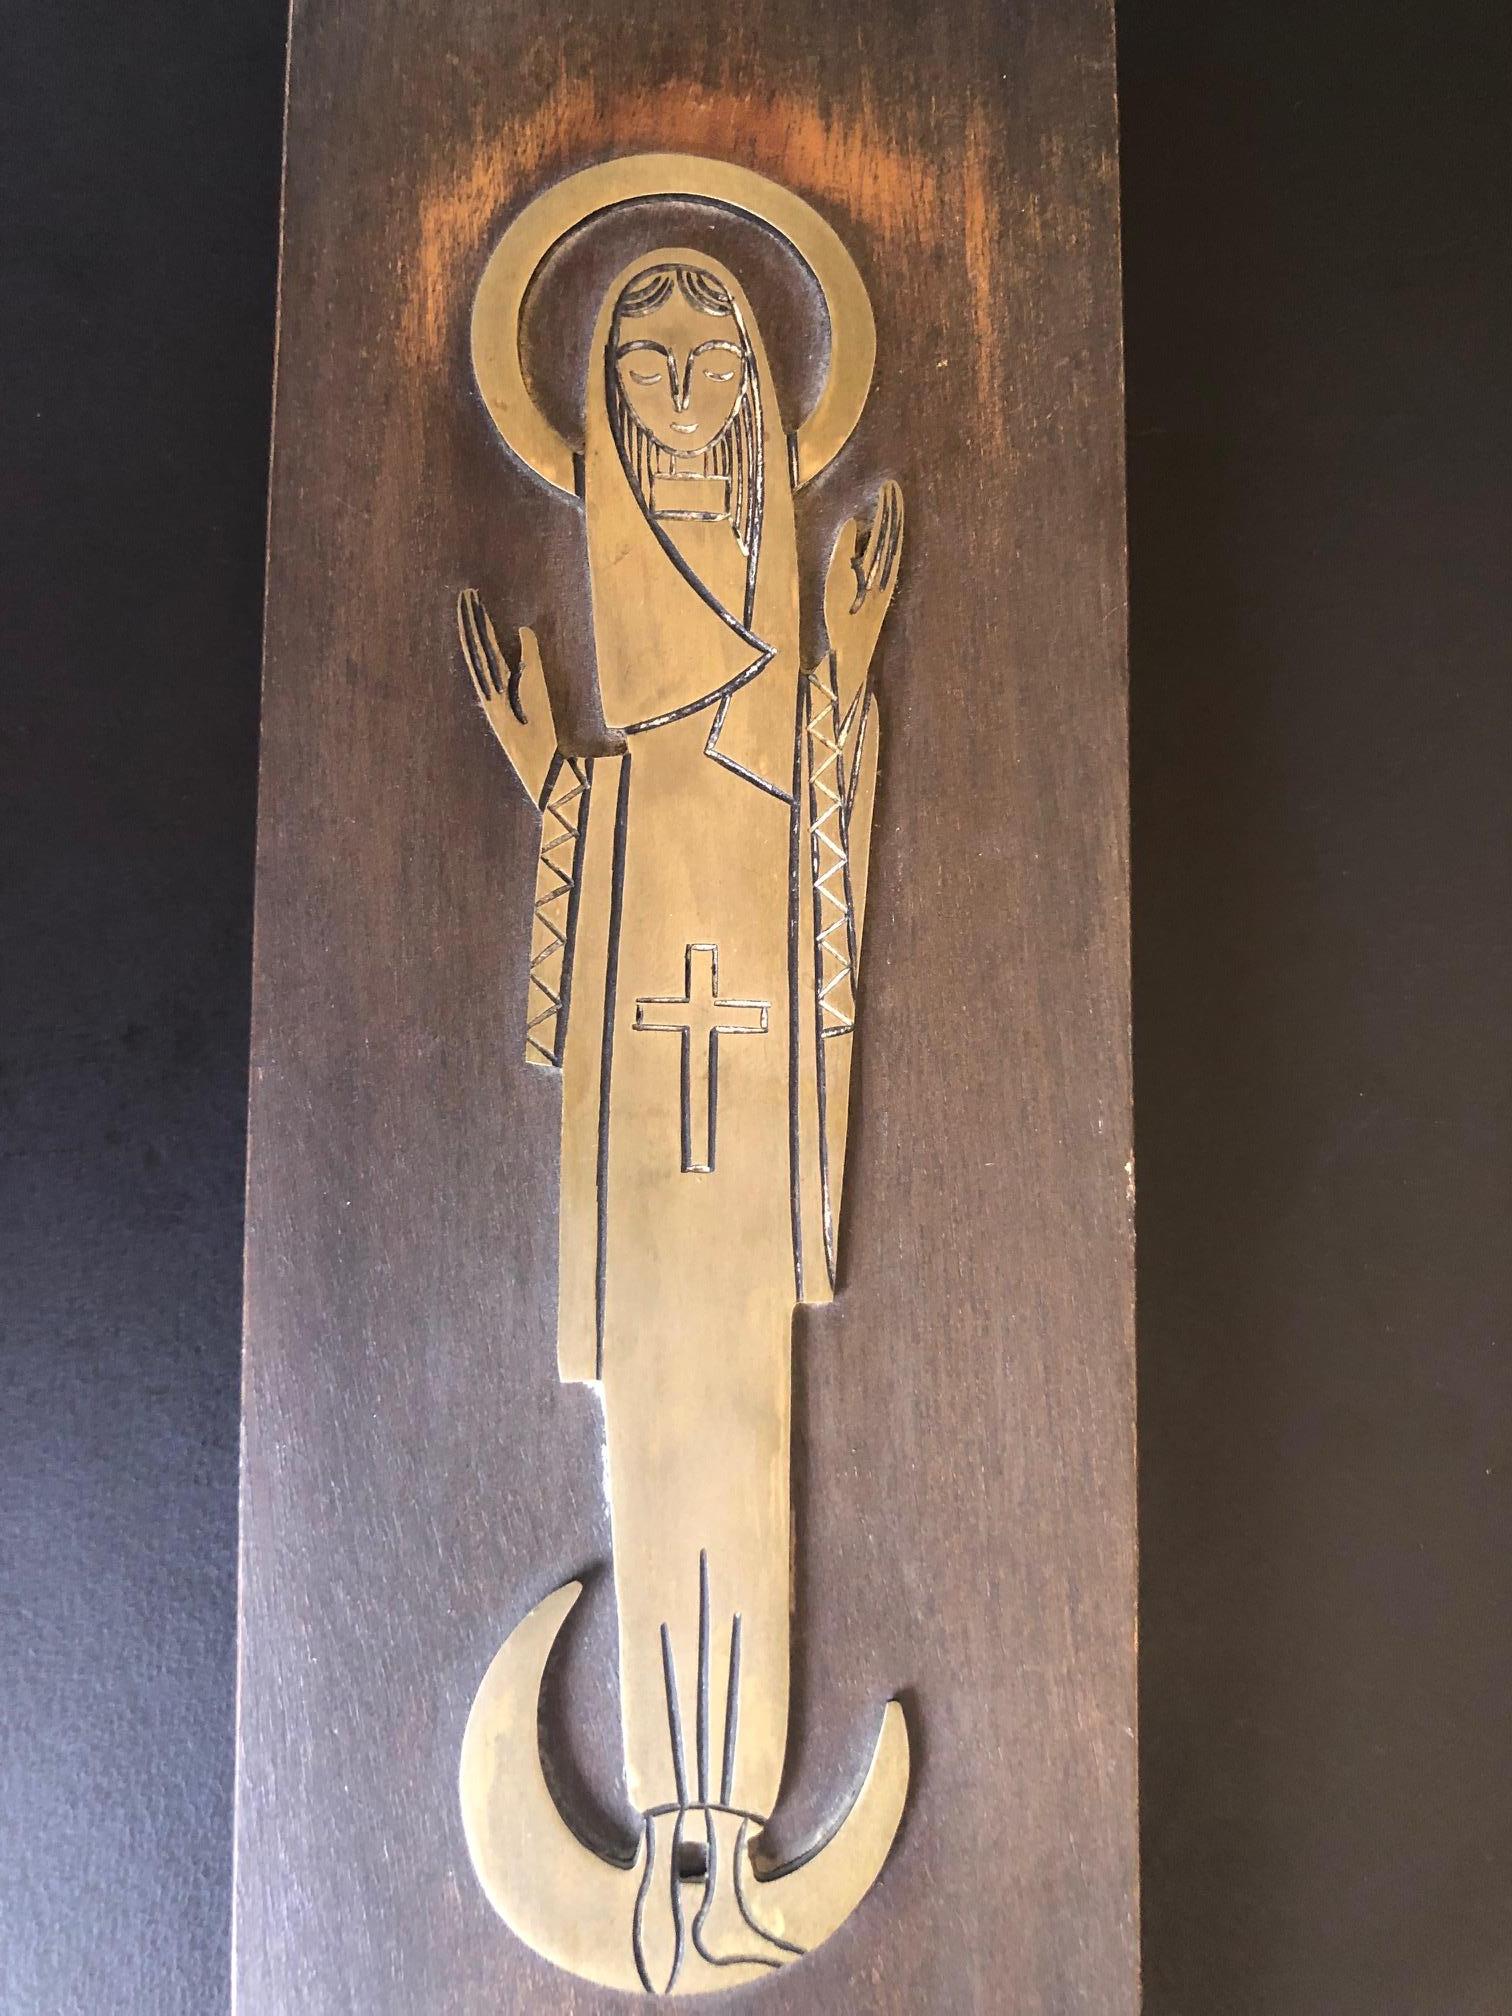 Eine sehr schöne und einfache religiöse Plakette oder Ikone von Maria, der Mutter von Jesus. Das Stück ist ein Flachrelief aus Messing auf einer Holztafel, ca. 1960er Jahre.